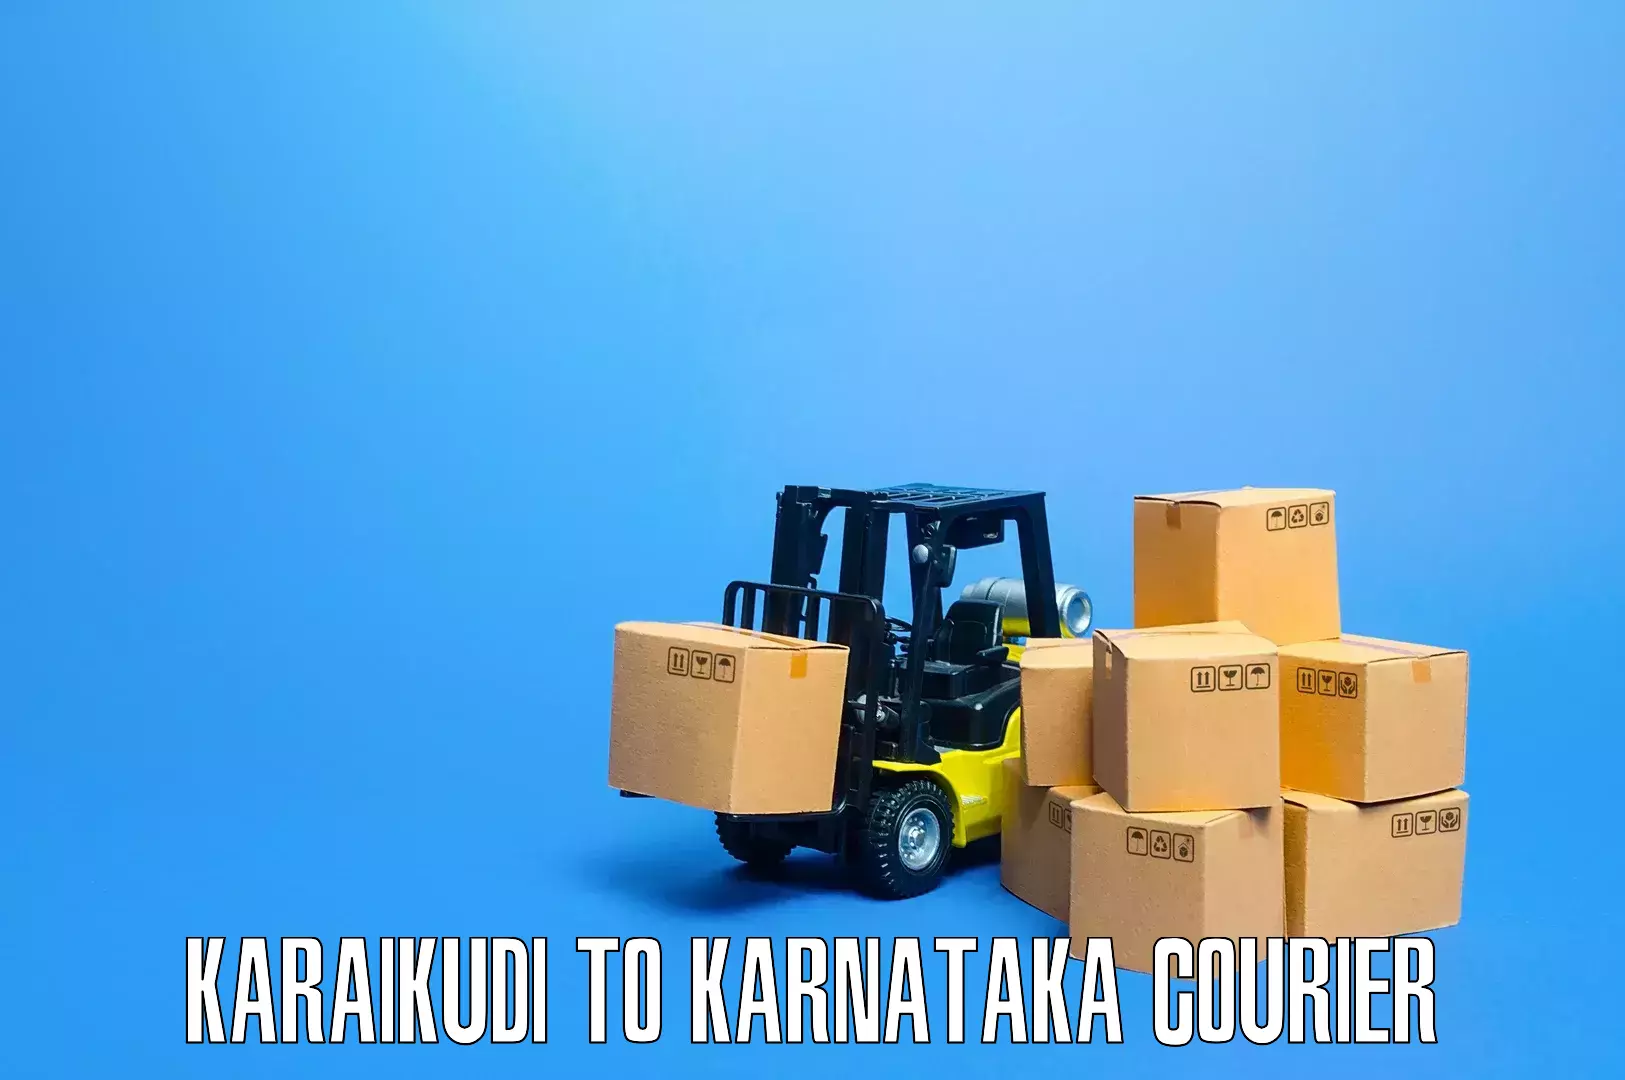 Professional furniture relocation Karaikudi to Kotturu